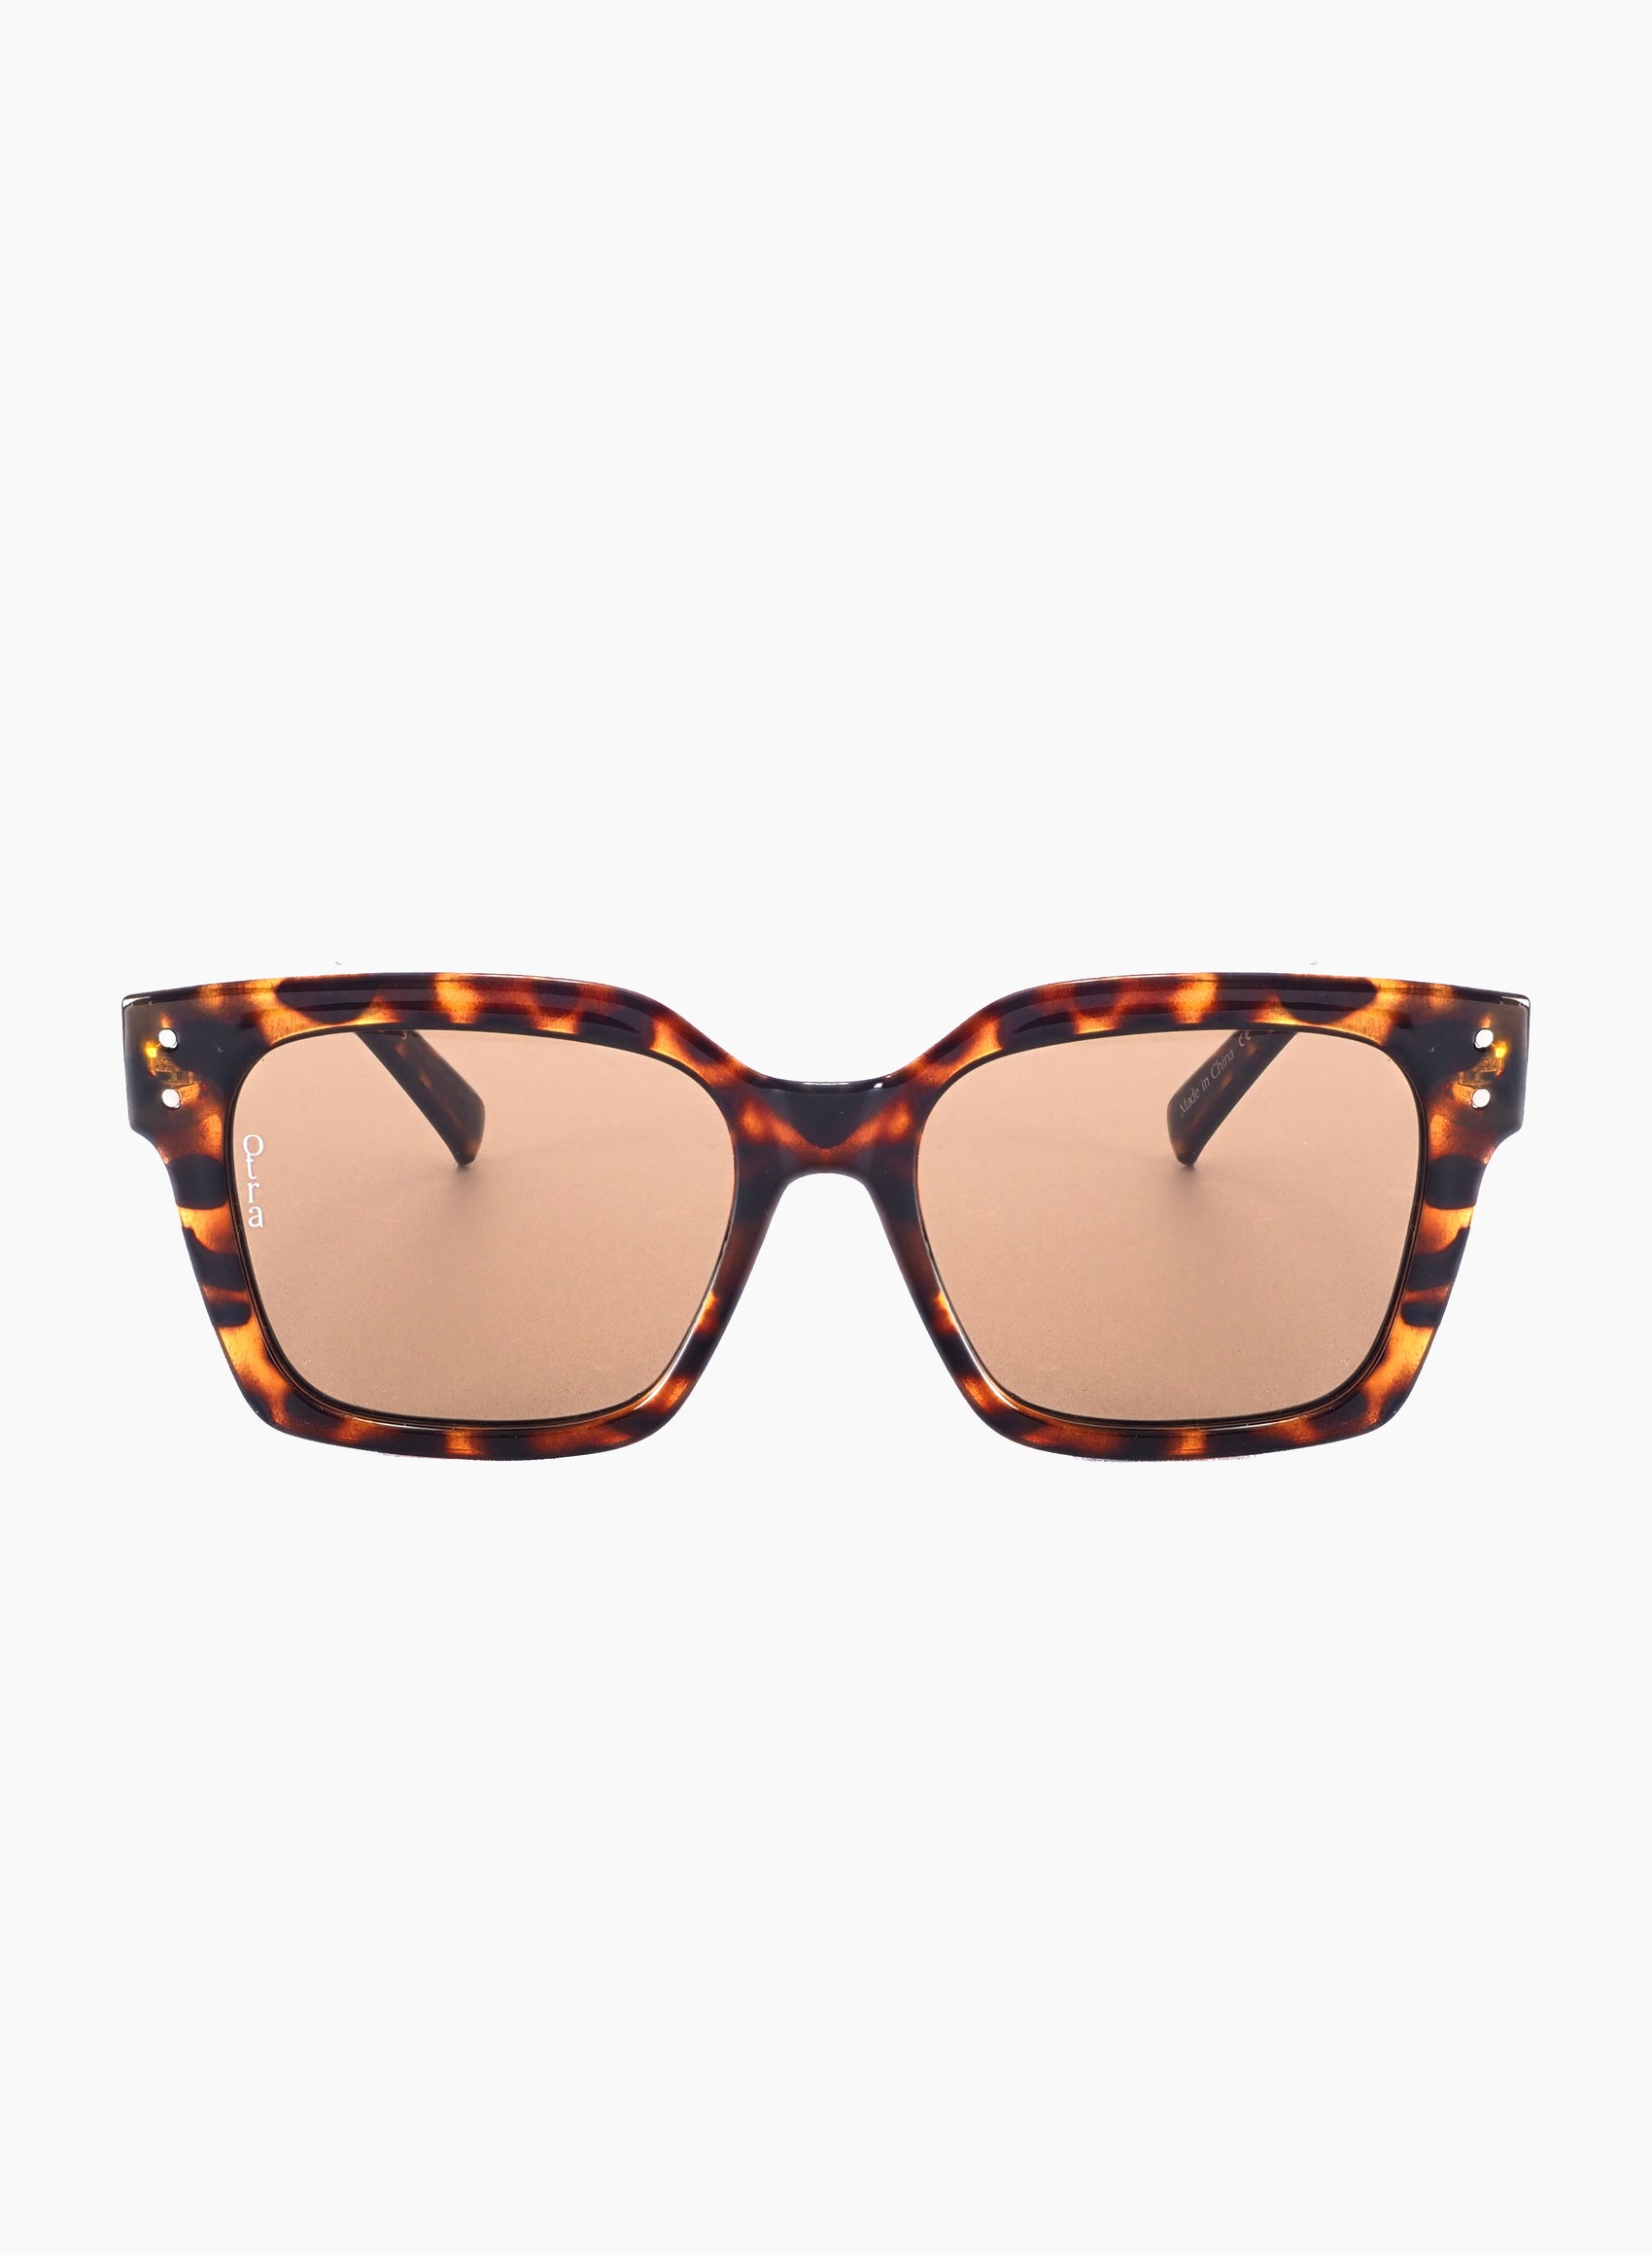 ORA sunglasses in brown tortoiseshell